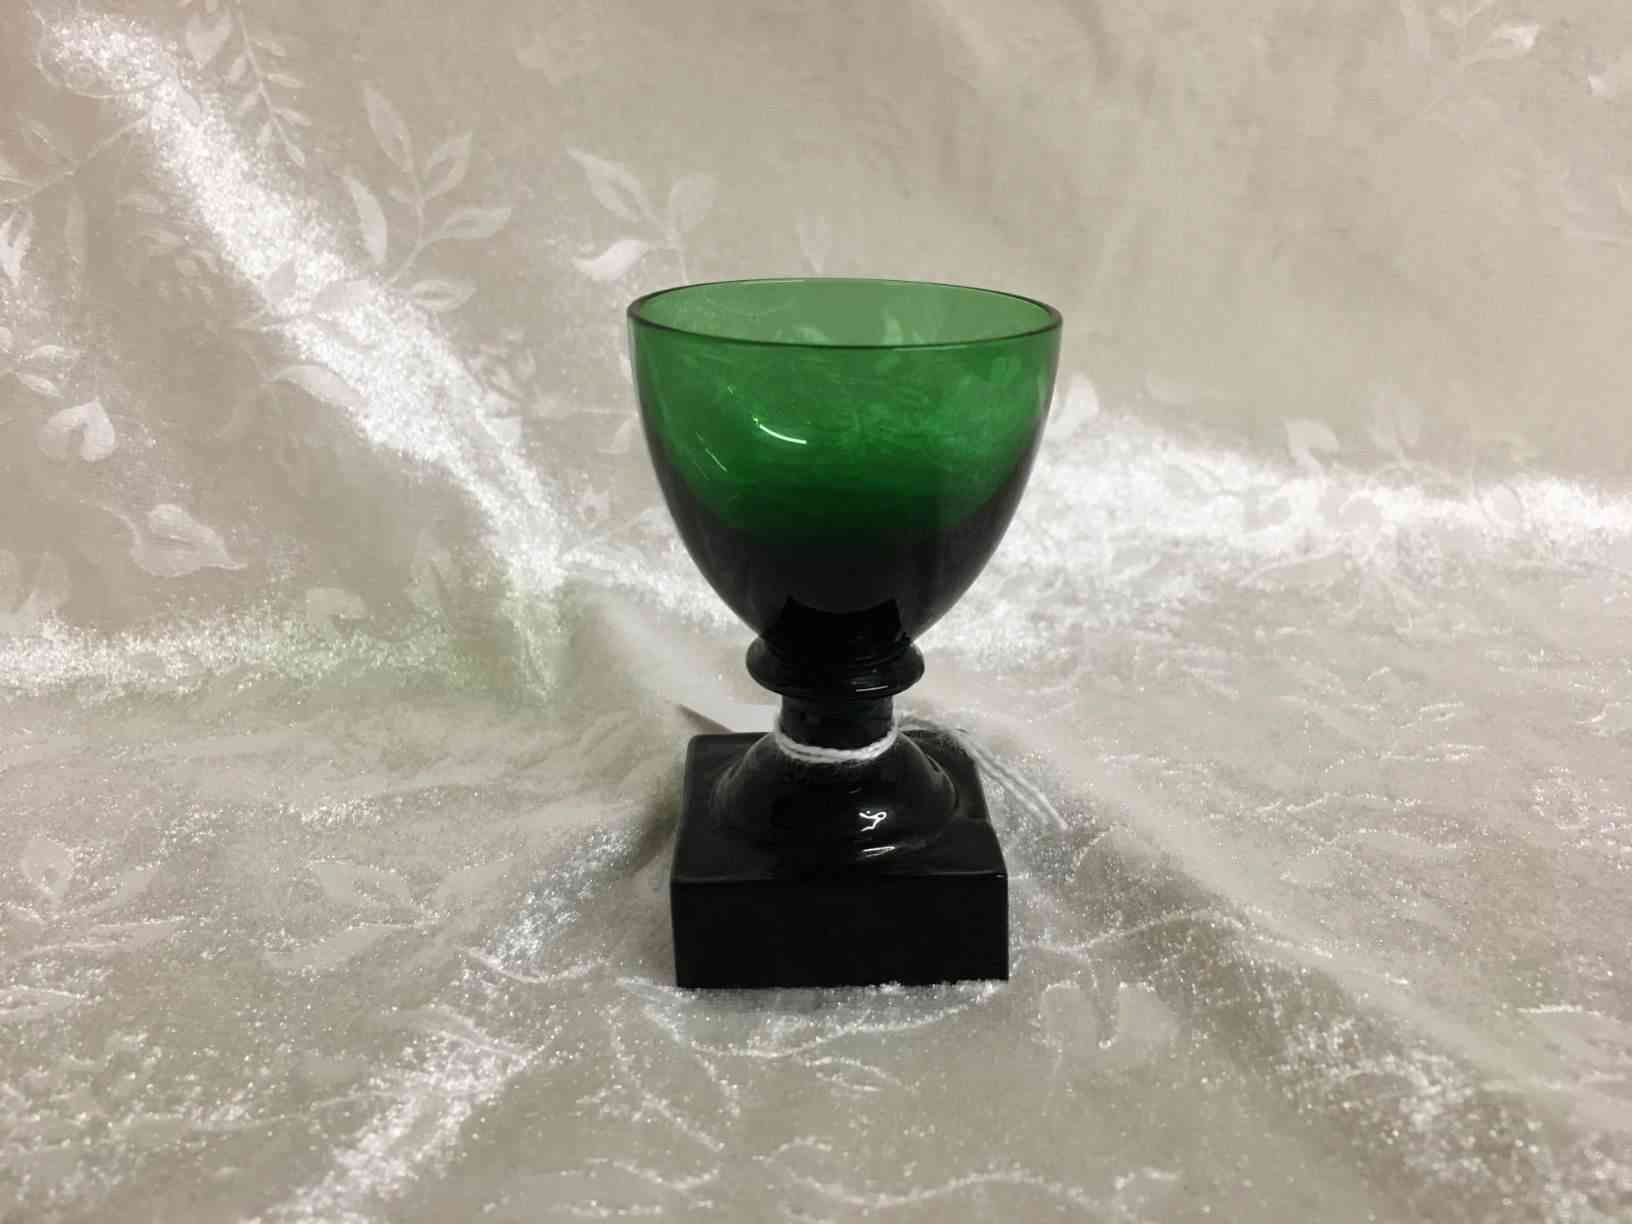 Holmegaard - Gorm den Gamle eller Viking grønt Snaps glas 7 cm i perfekt stand. Pris: 250,- Kr. Glas fremstillet i mørkegrønt glas med kraftig firkantet fod, slebet firkantet eller presset i form, anhæftet mundblæst kumme. Bunden har opstukket "blomst" med runde kronblade. Formen "Skålform" er fra 1900, senere i 1920 udførtes de i mørkegrønt glas blandt andet til glasgrosserer Wiggo Dahl der solgte dem som "Gorm den Gamle". Holmegaard overtog senere forhandlingen af glassene og solgte dem som "Viking". Kastrup har en lignende serie kaldet Emma, dette er dog med slibninger i kummen.